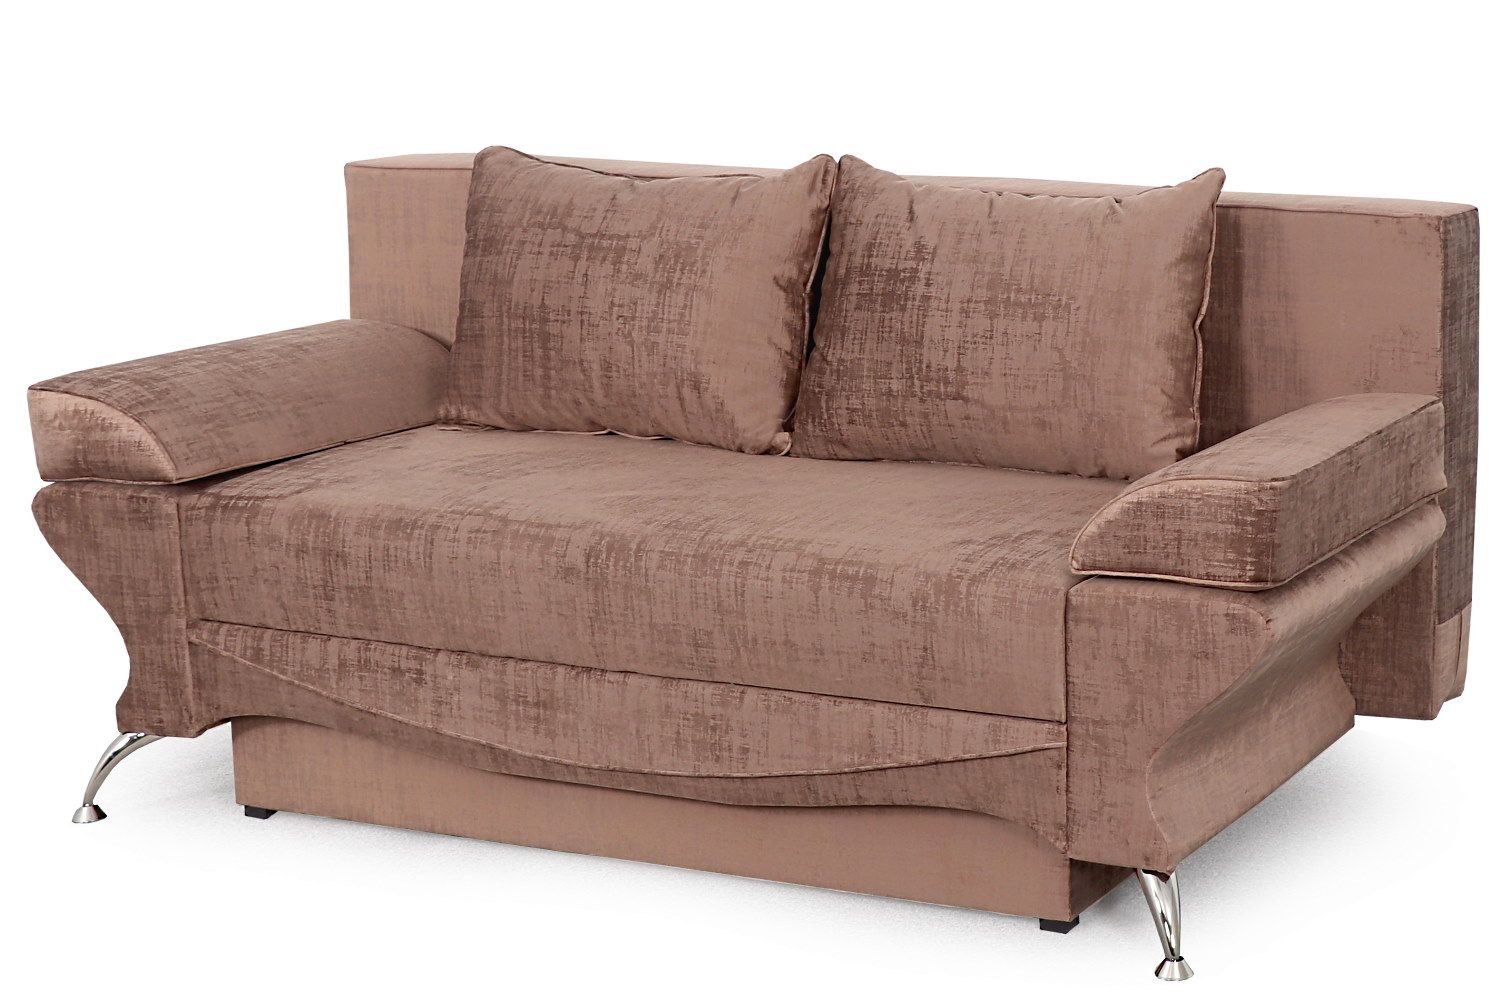 Купить диван-кровать джеки 4/1 стандарт (вариант 1) - Диваны. Фото, цены